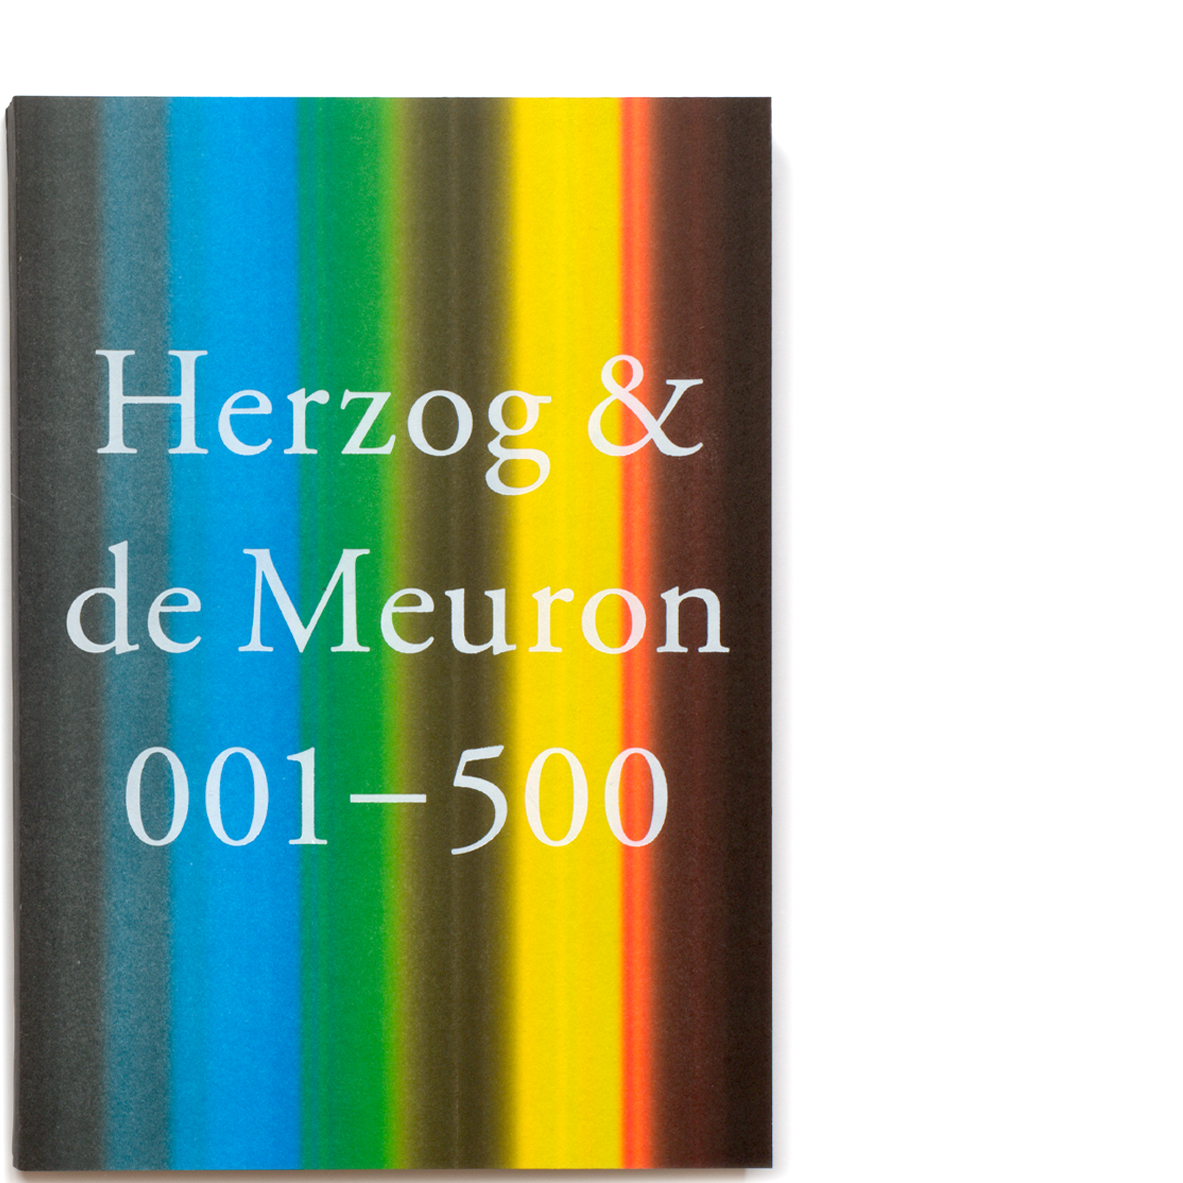 Herzog & de Meuron 001 – 500 , Paperback Edition